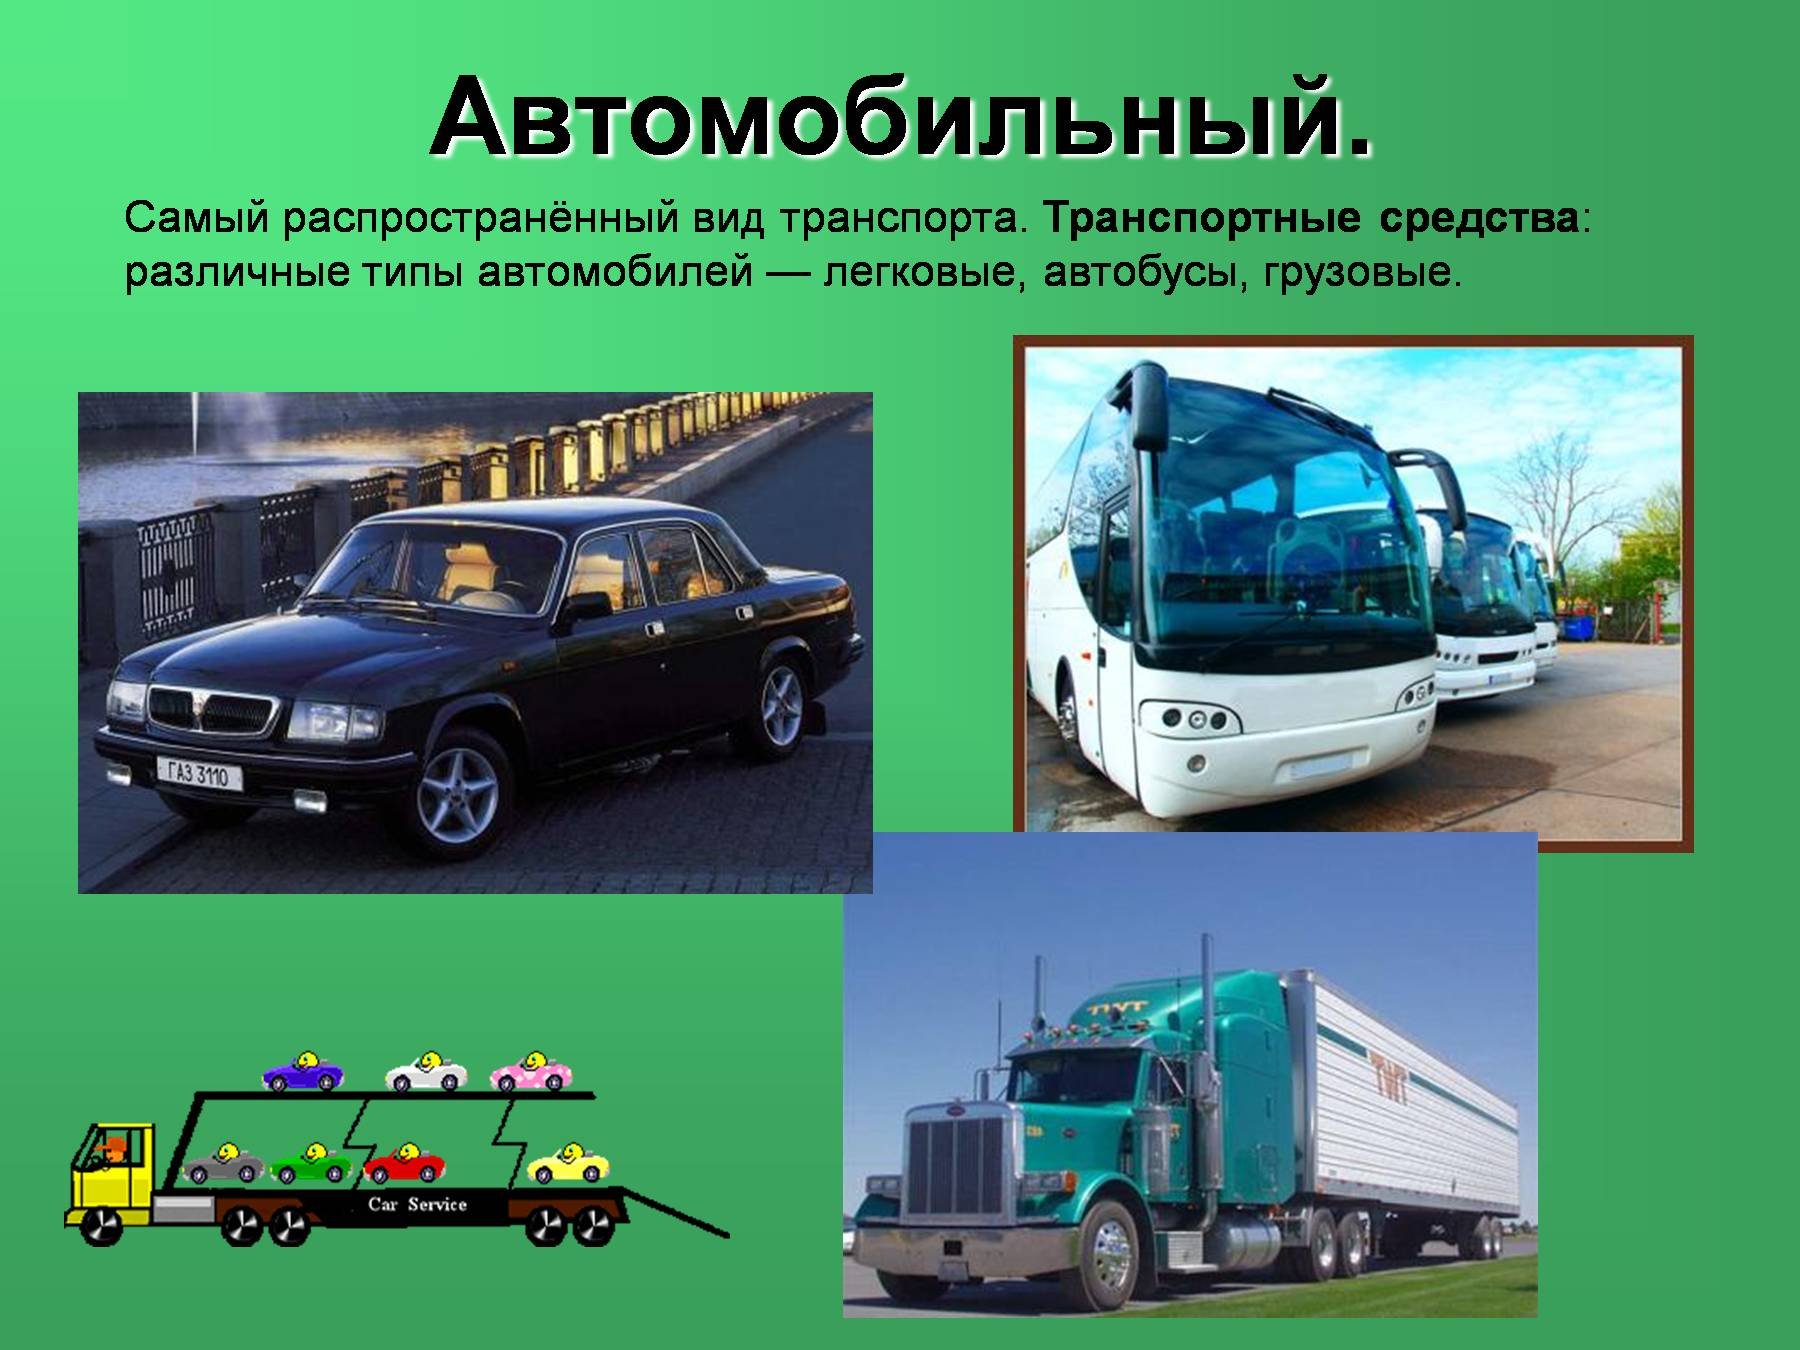 Любые виды транспортных средств. Виды автомобильного транспорта. Транспортные средства. Виды транспорта автомобиль. Автомобильный транспорт слайд.